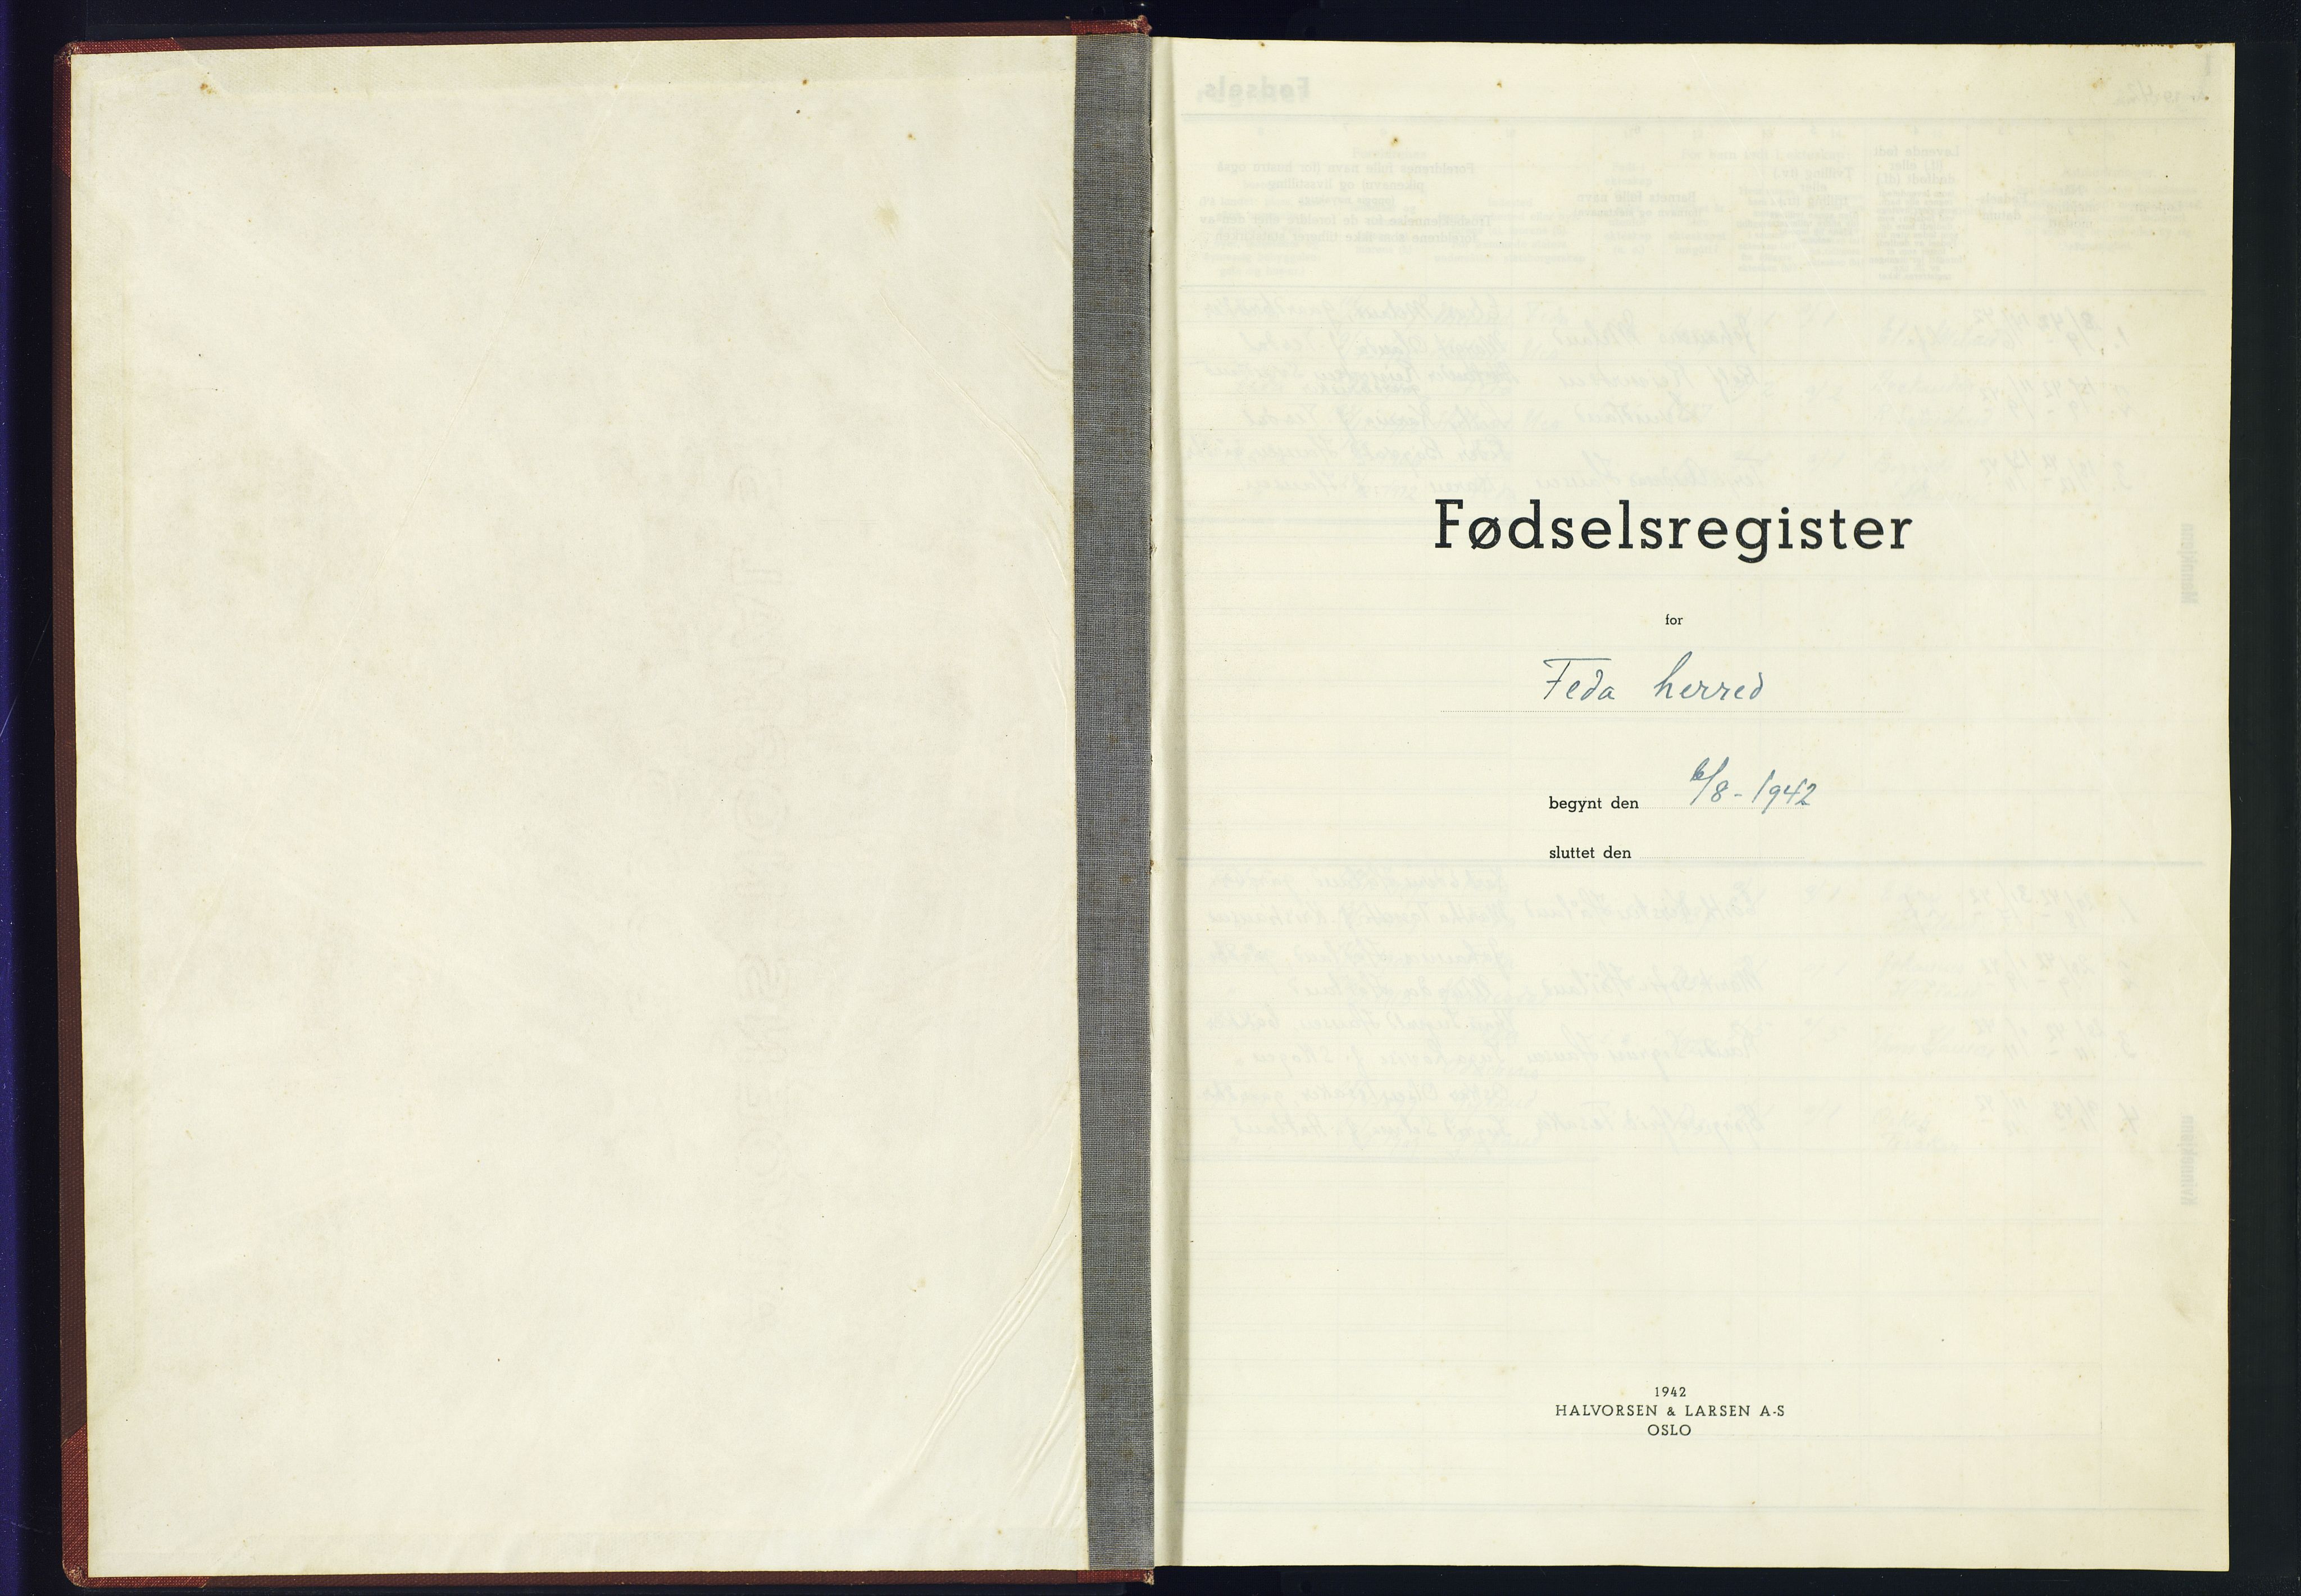 Kvinesdal sokneprestkontor, SAK/1111-0026/J/Jb/L0001: Fødselsregister nr. II.6.1, 1942-1945